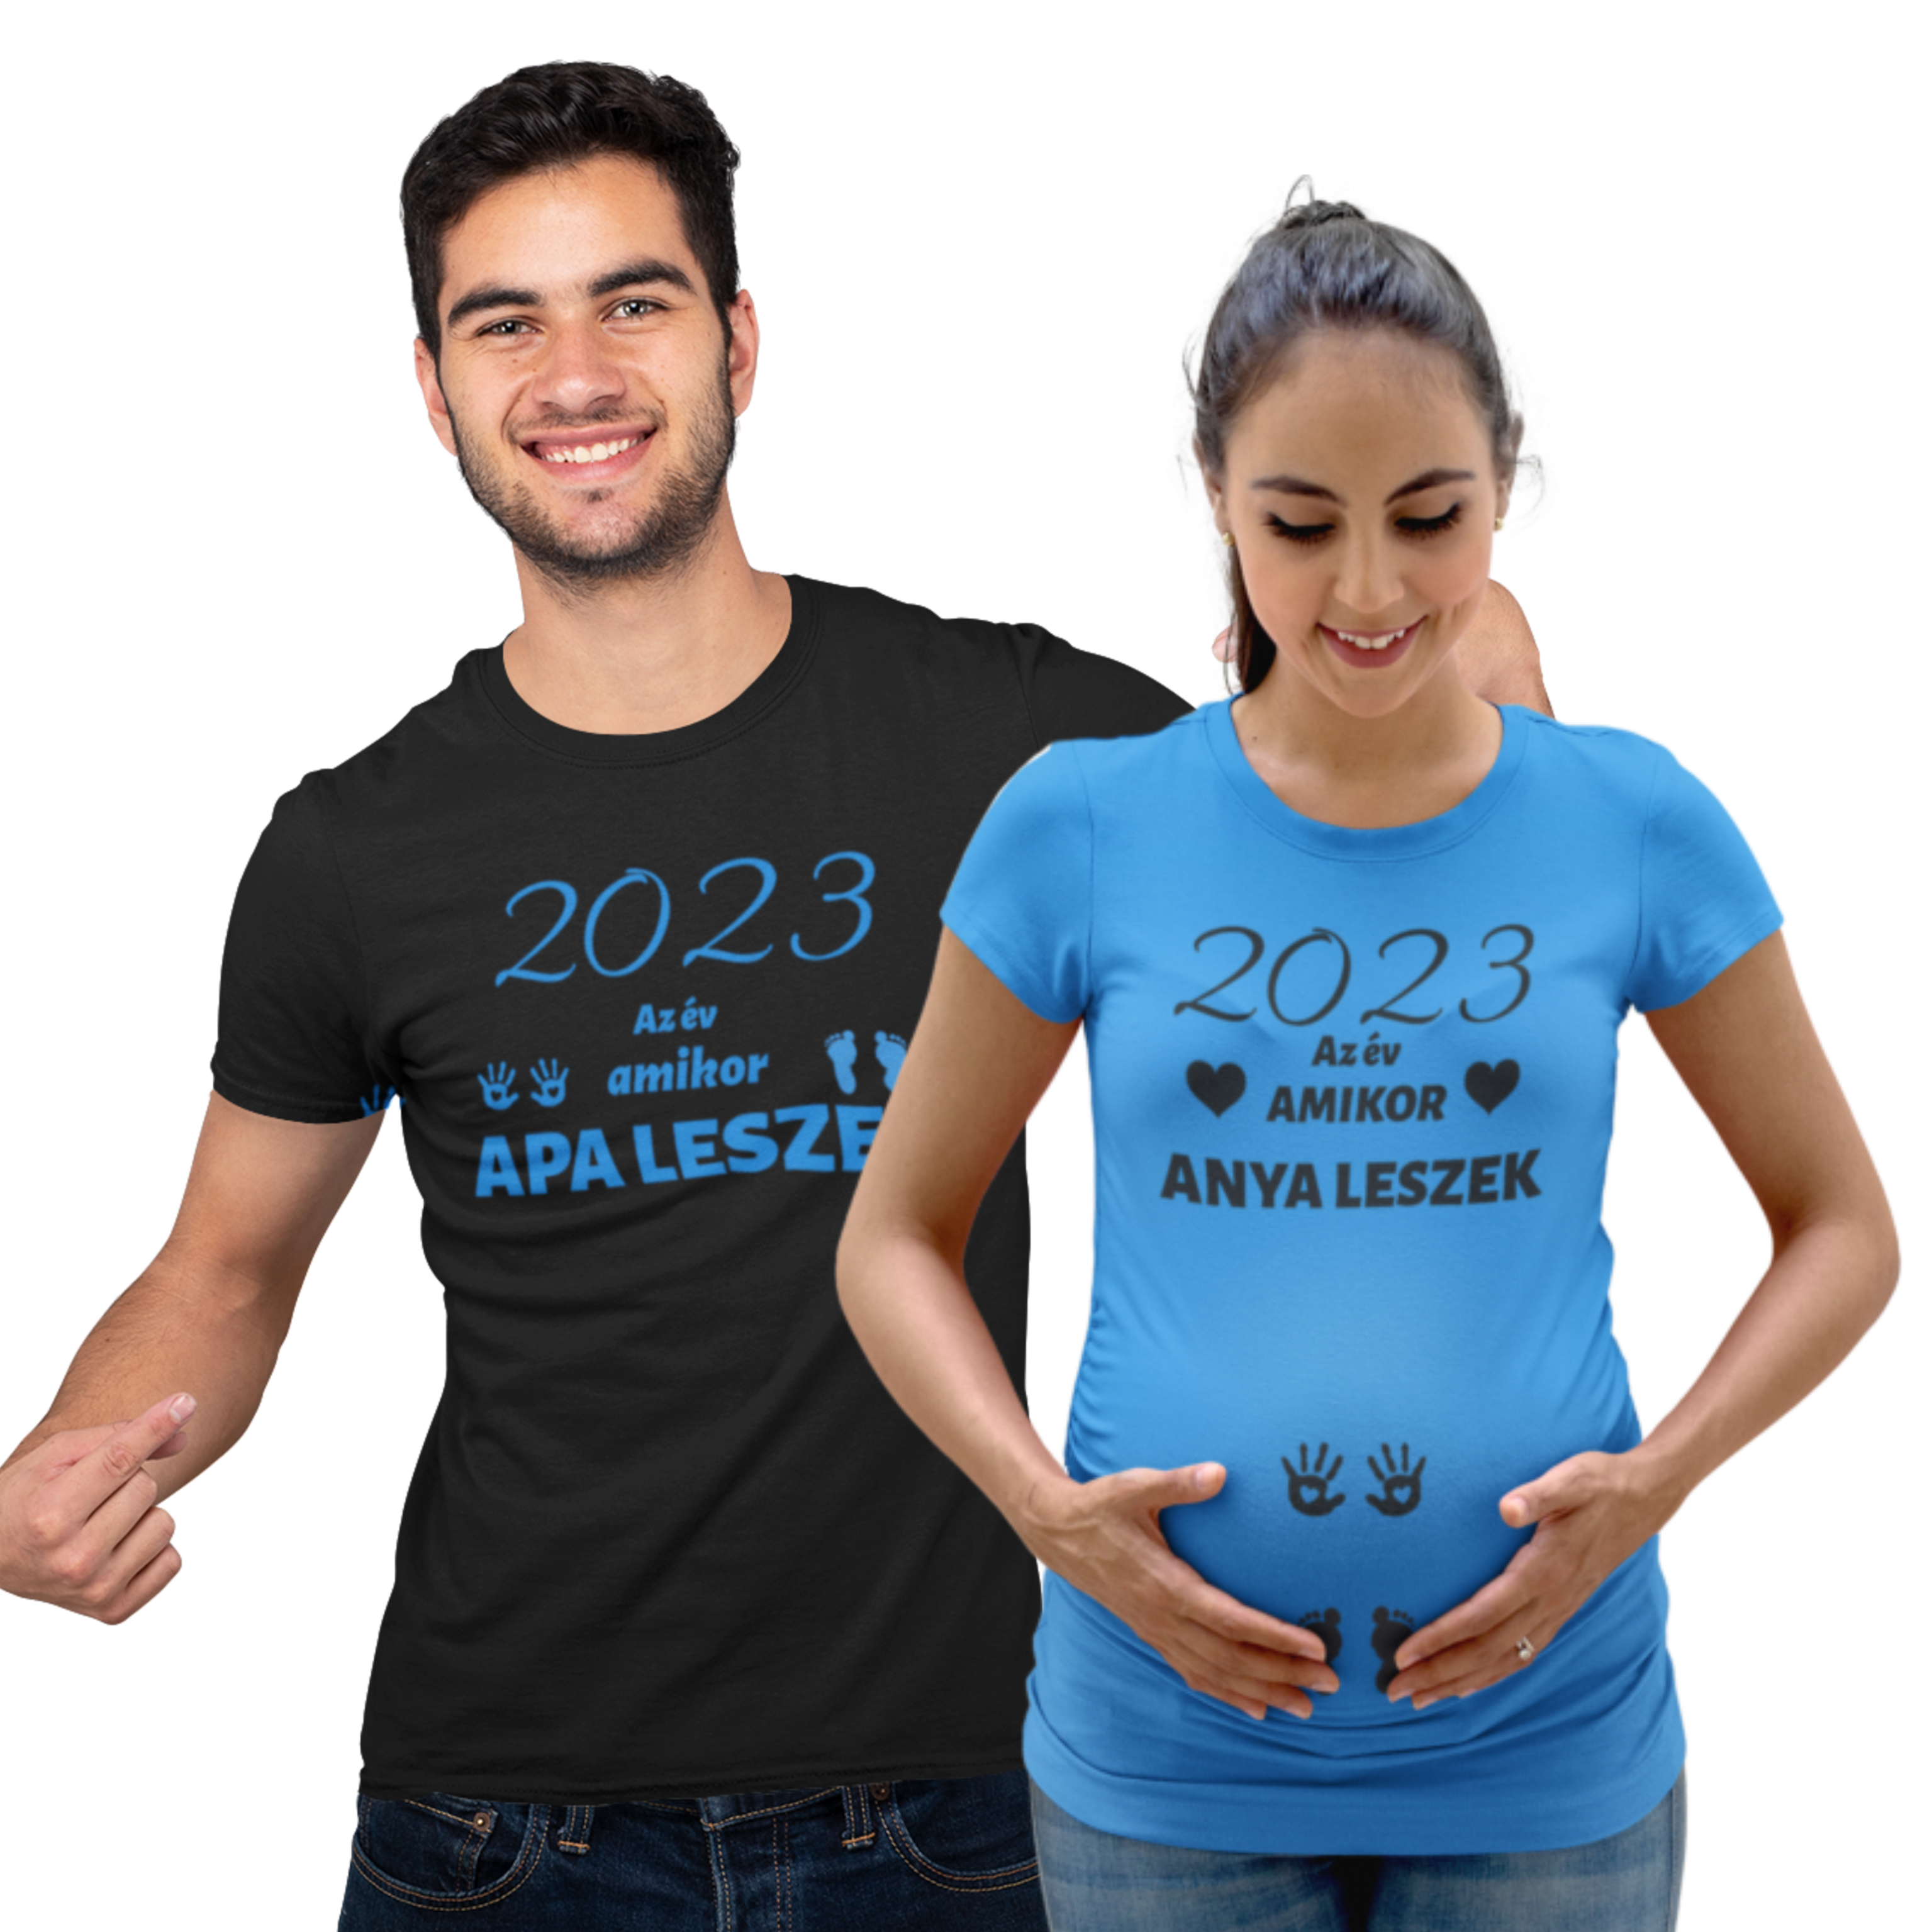 2023 az év amikor anya leszek/2023 az év amikor apa leszek kék/fekete(2 db póló)